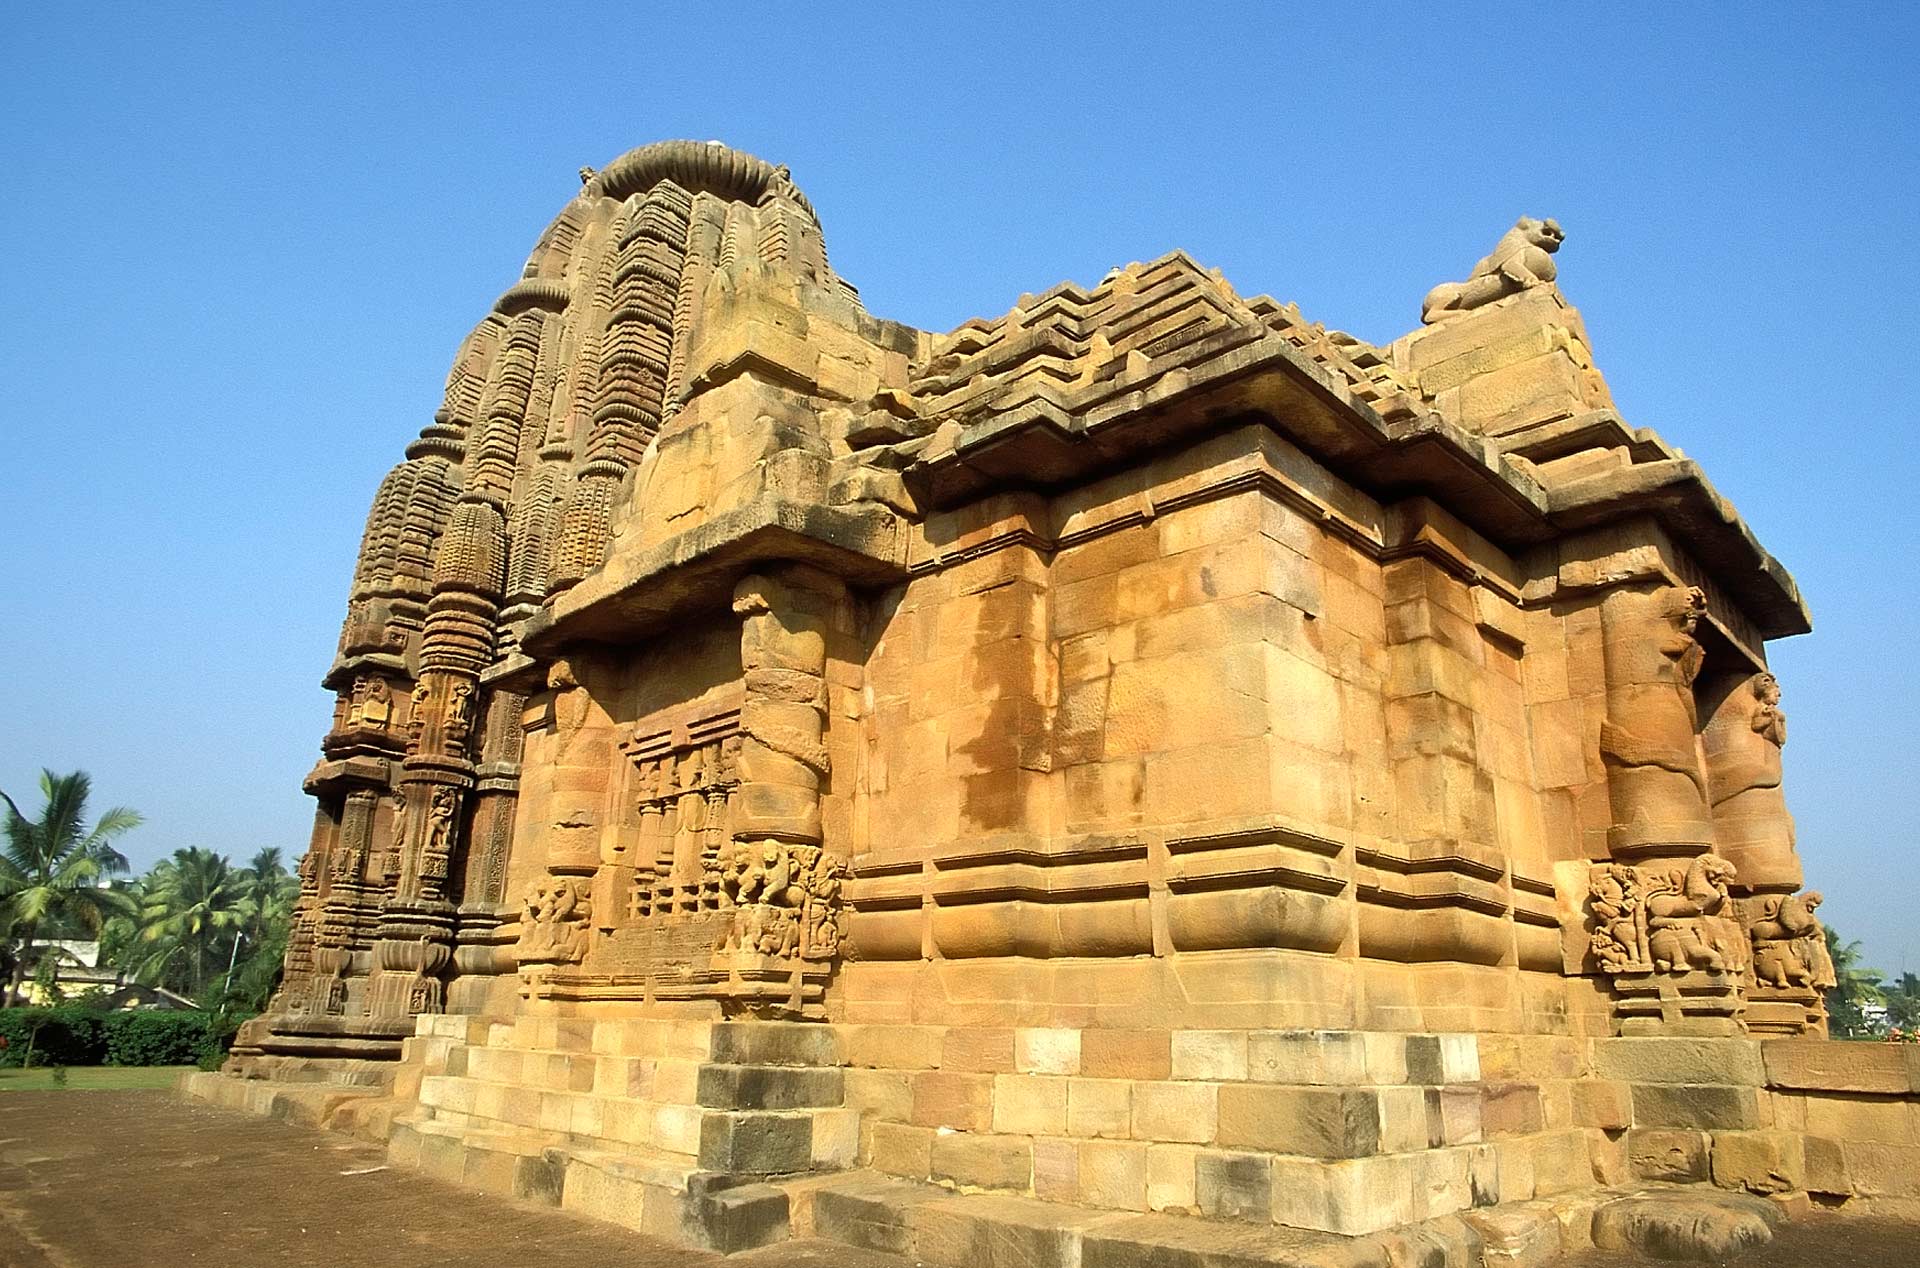 Raja Rani Temple, Bhubaneswar, Orissa, India